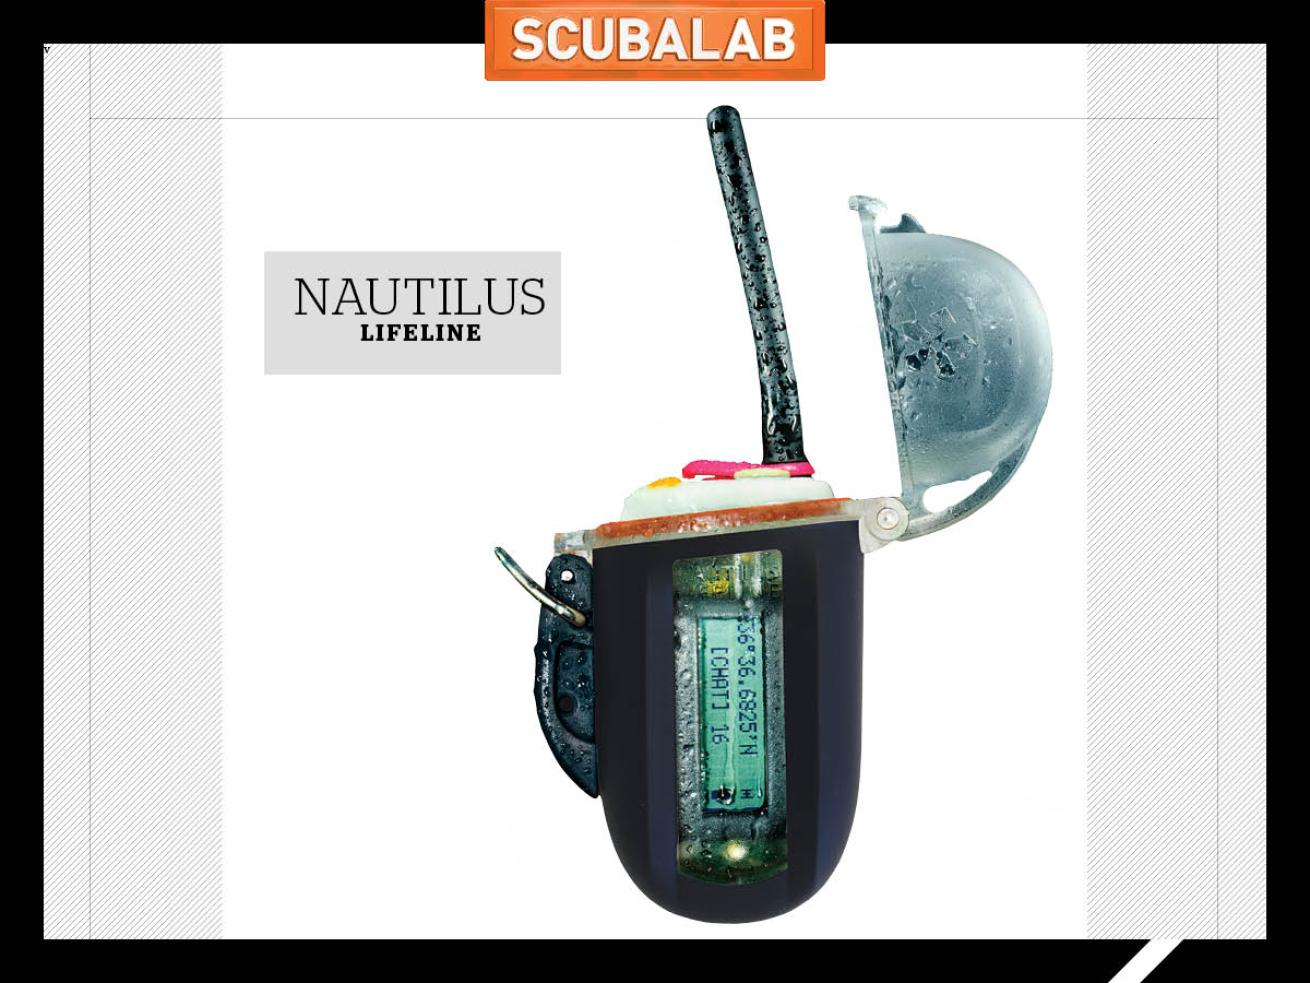 Nautilus Lifeline solo scuba diving safety equipment.